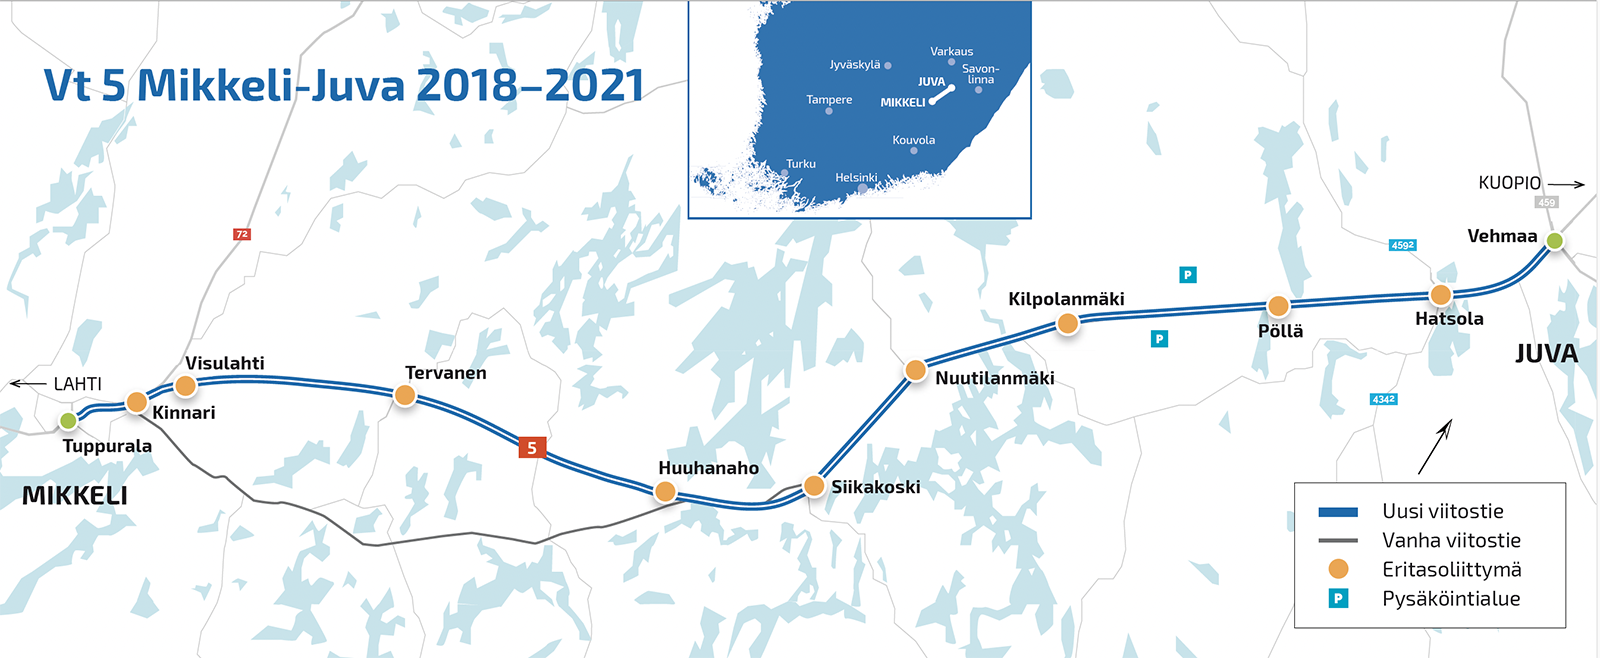 Vt 5 Mikkeli–Juva yleiskartta 2018–2021